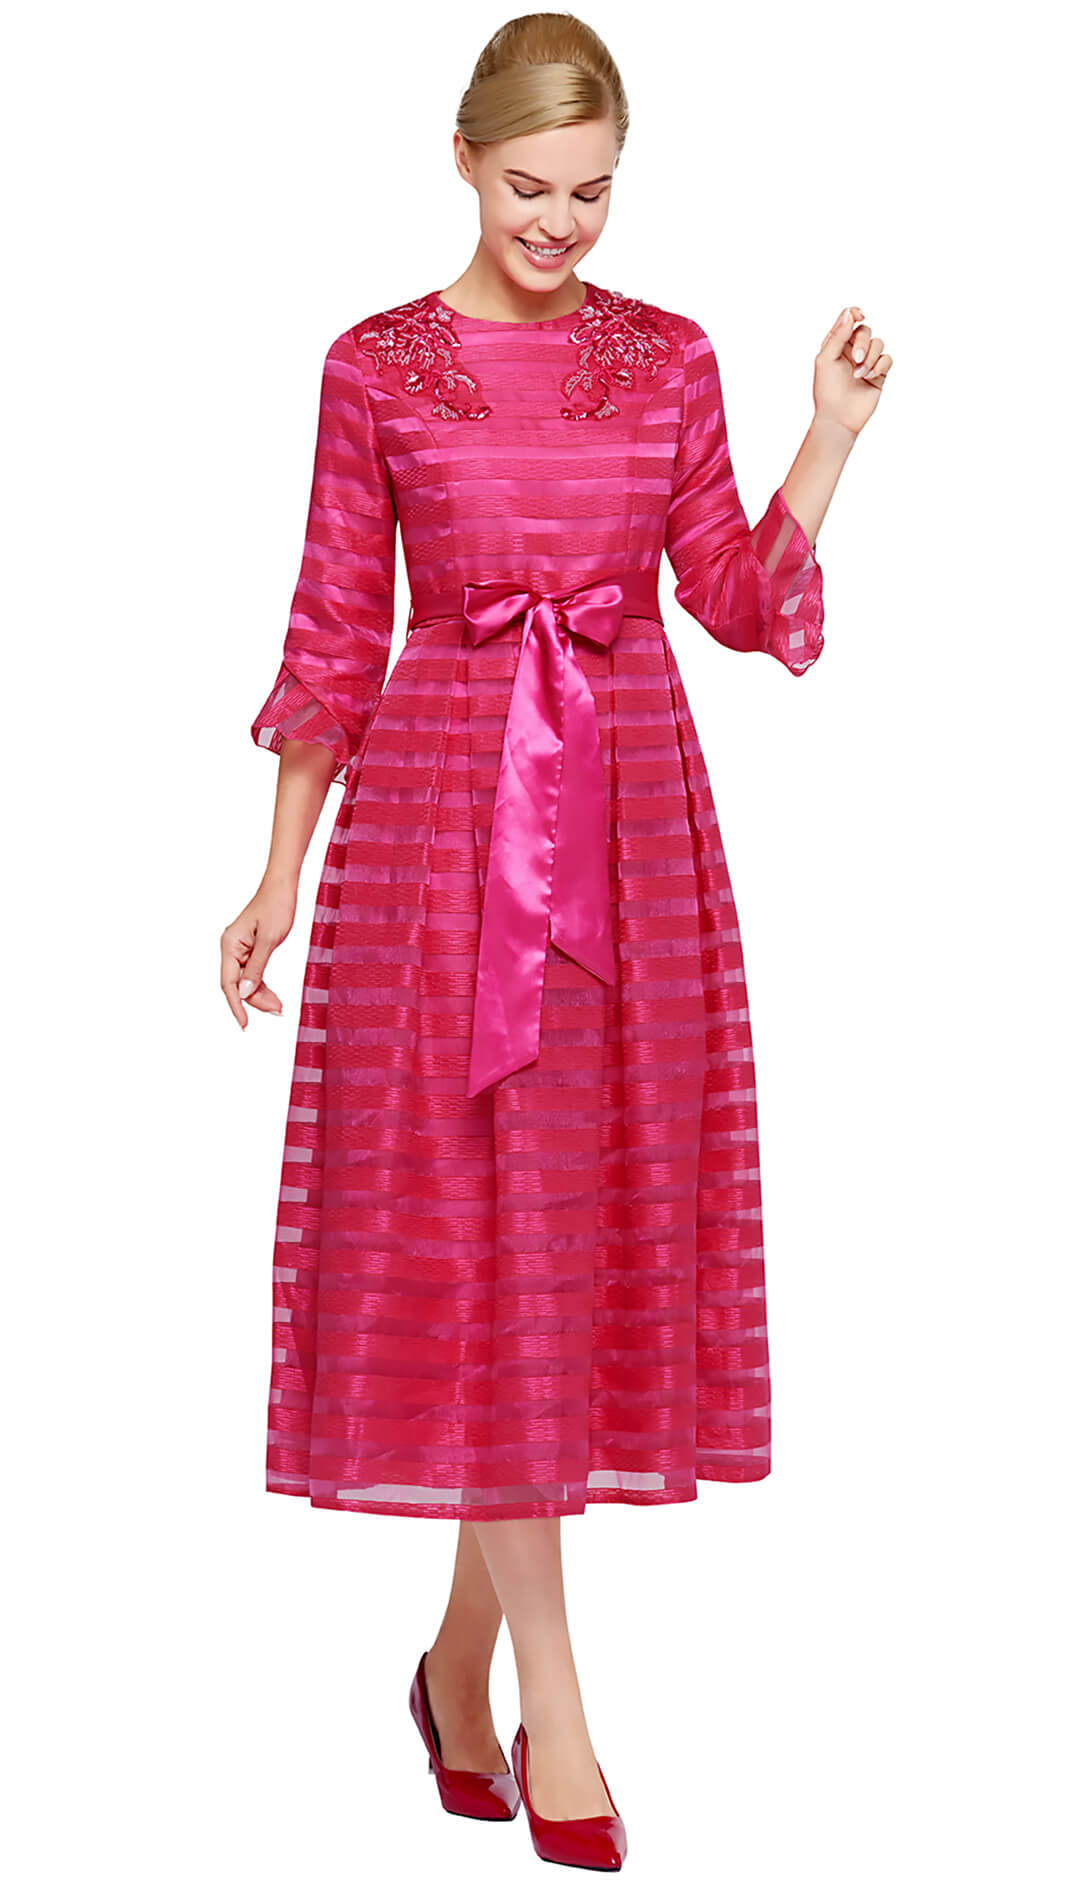 Nina Nischelle Church Dress 2990 - Church Suits For Less